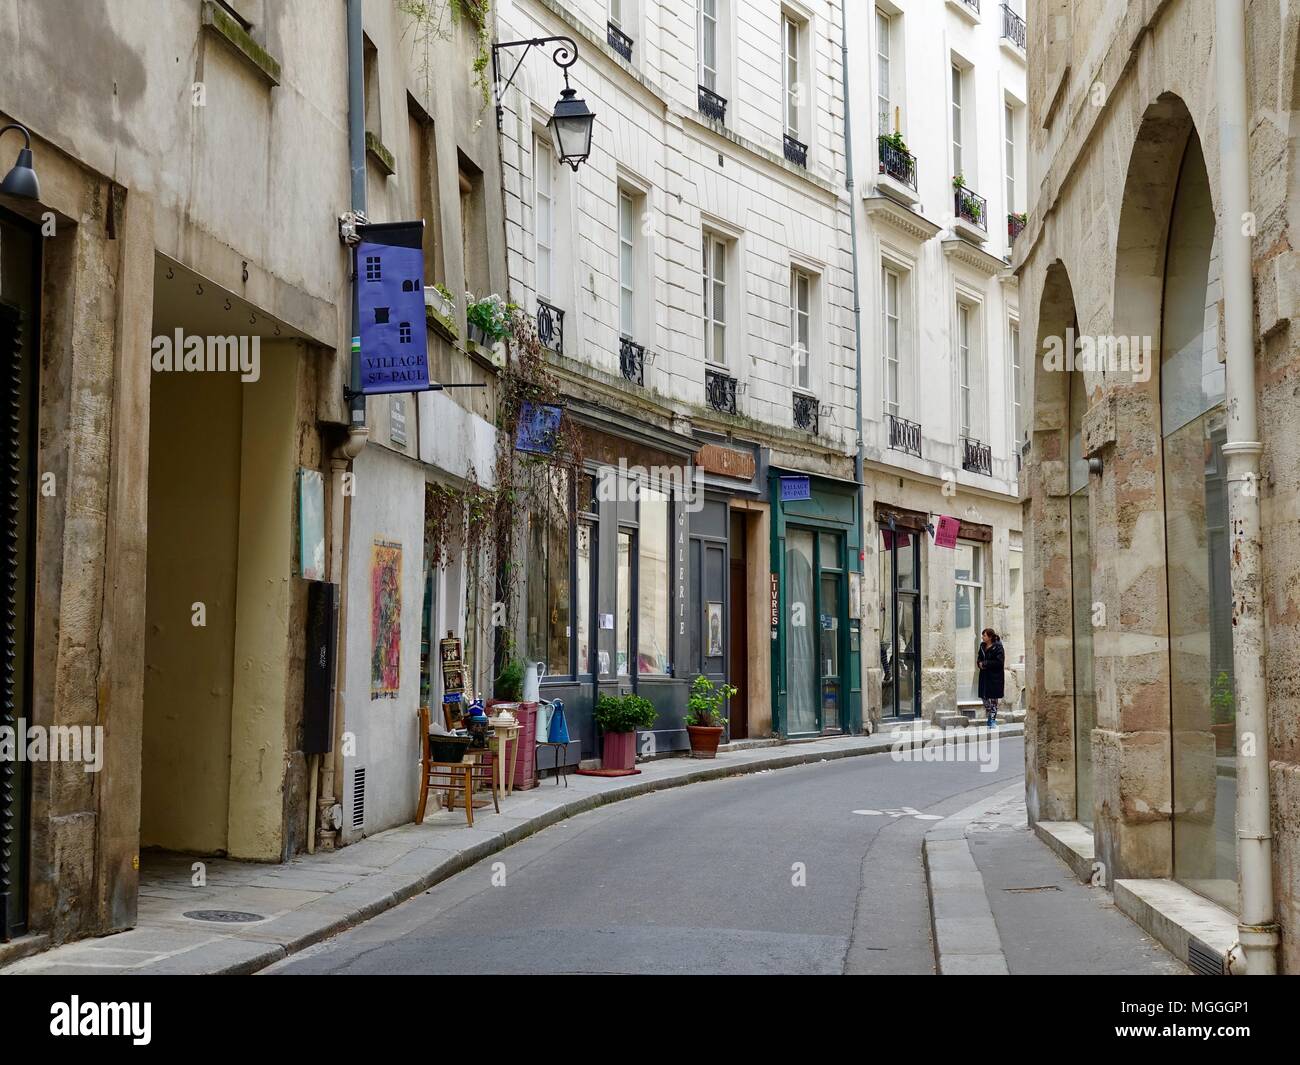 Lone donna camminando giù per una strada curva, passato negozi, nel villaggio di San Paolo quartiere del Marais. Parigi, Francia. Foto Stock